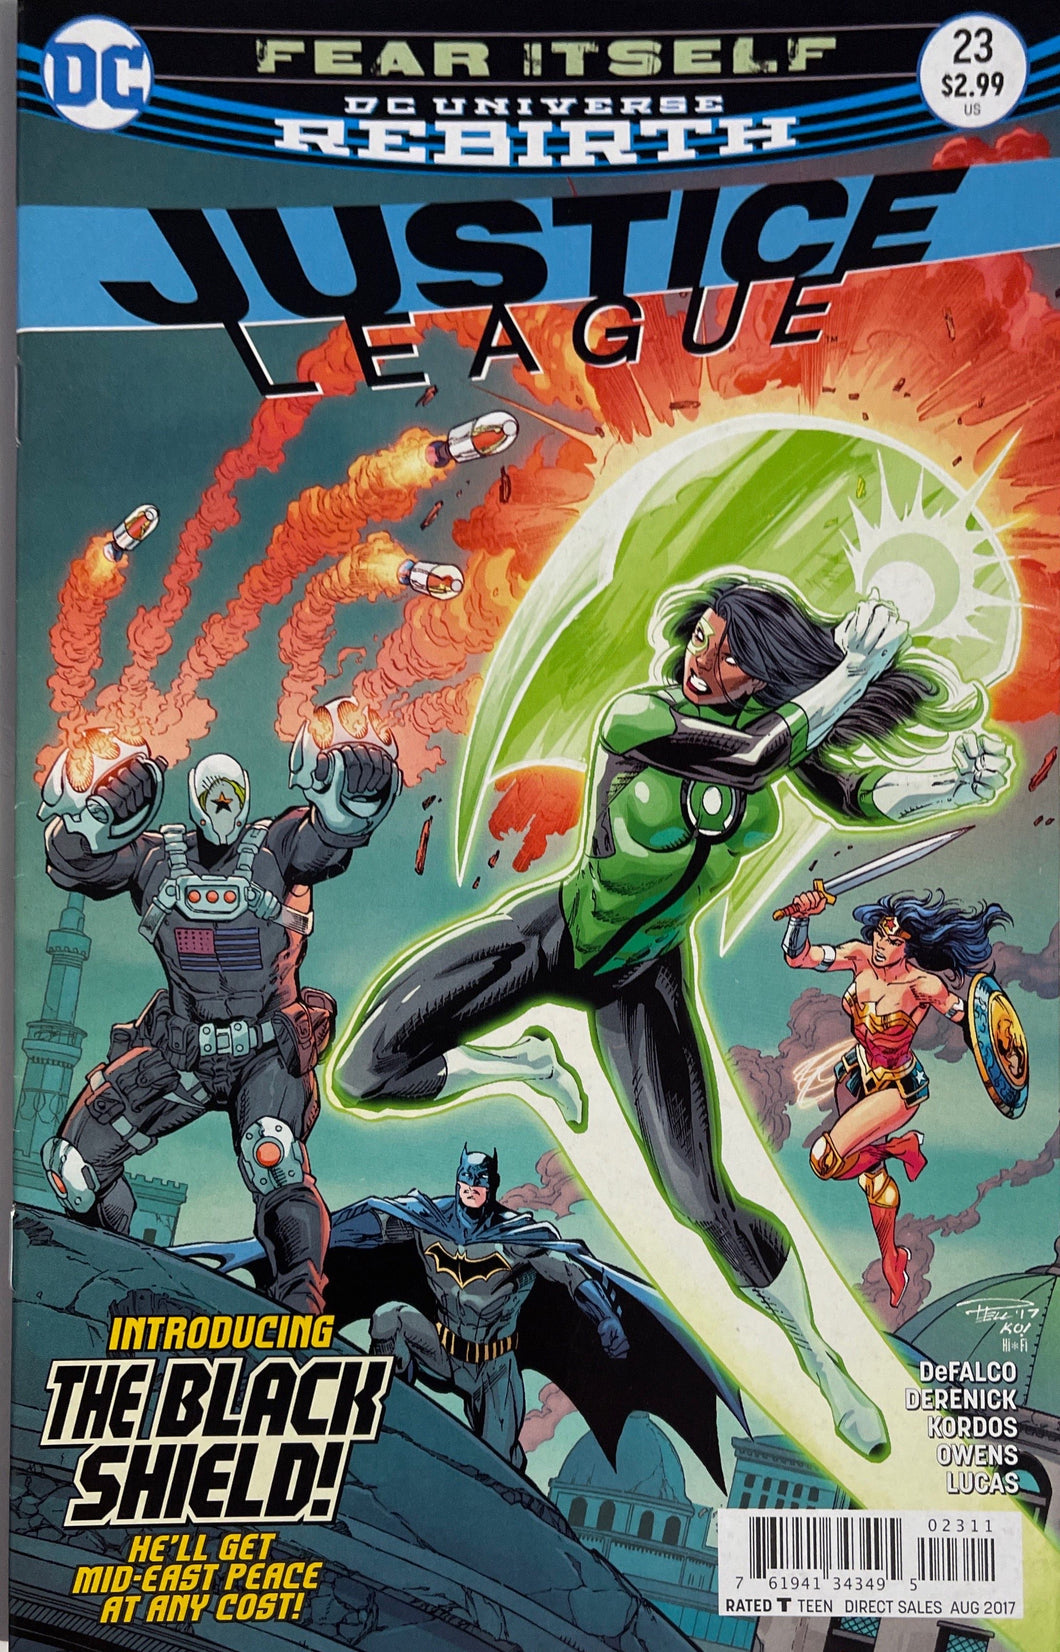 Justice League 23